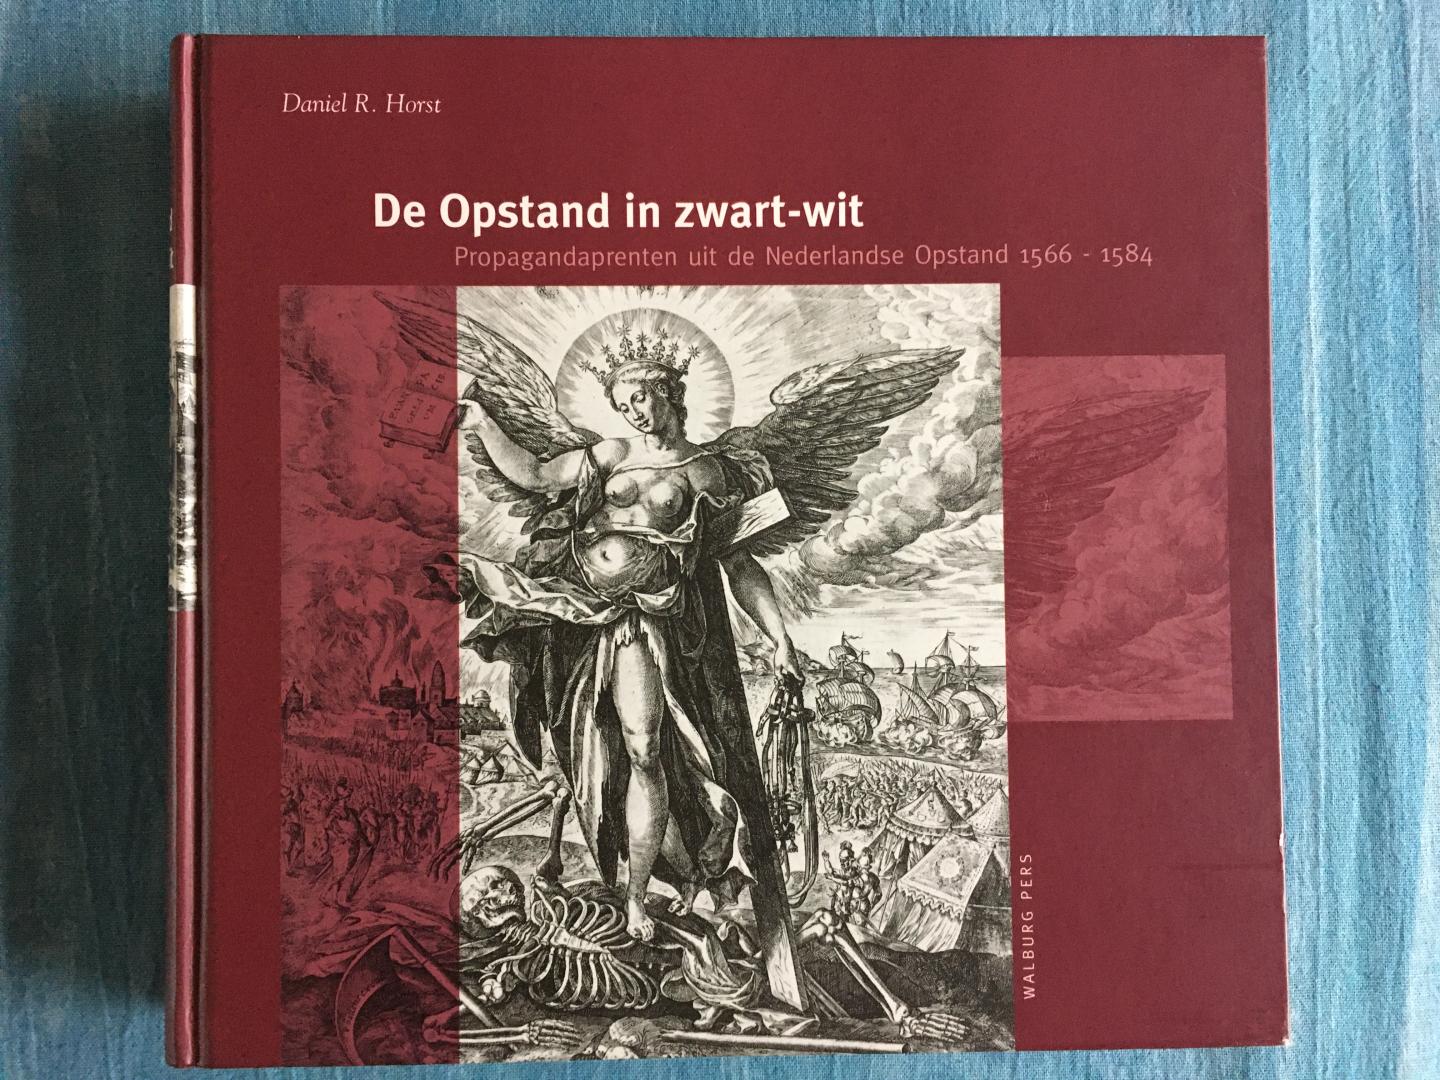 Horst, Daniel R. - De Opstand in zwart-wit. Propagandaprenten uit de Nederlandse Opstand, 1566-1584.